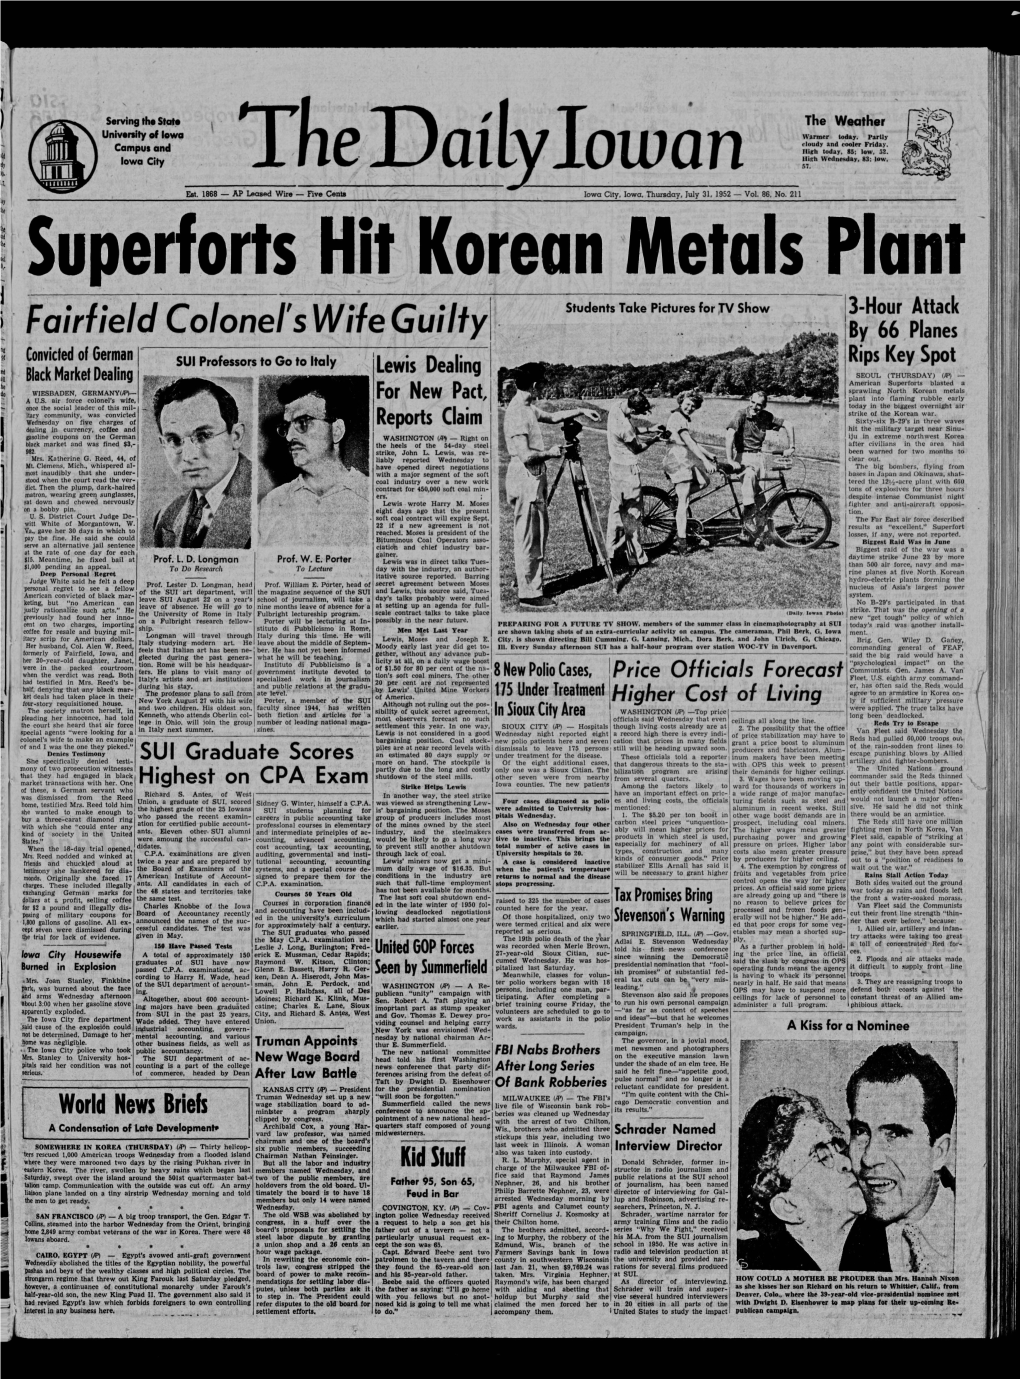 Daily Iowan (Iowa City, Iowa), 1952-07-31